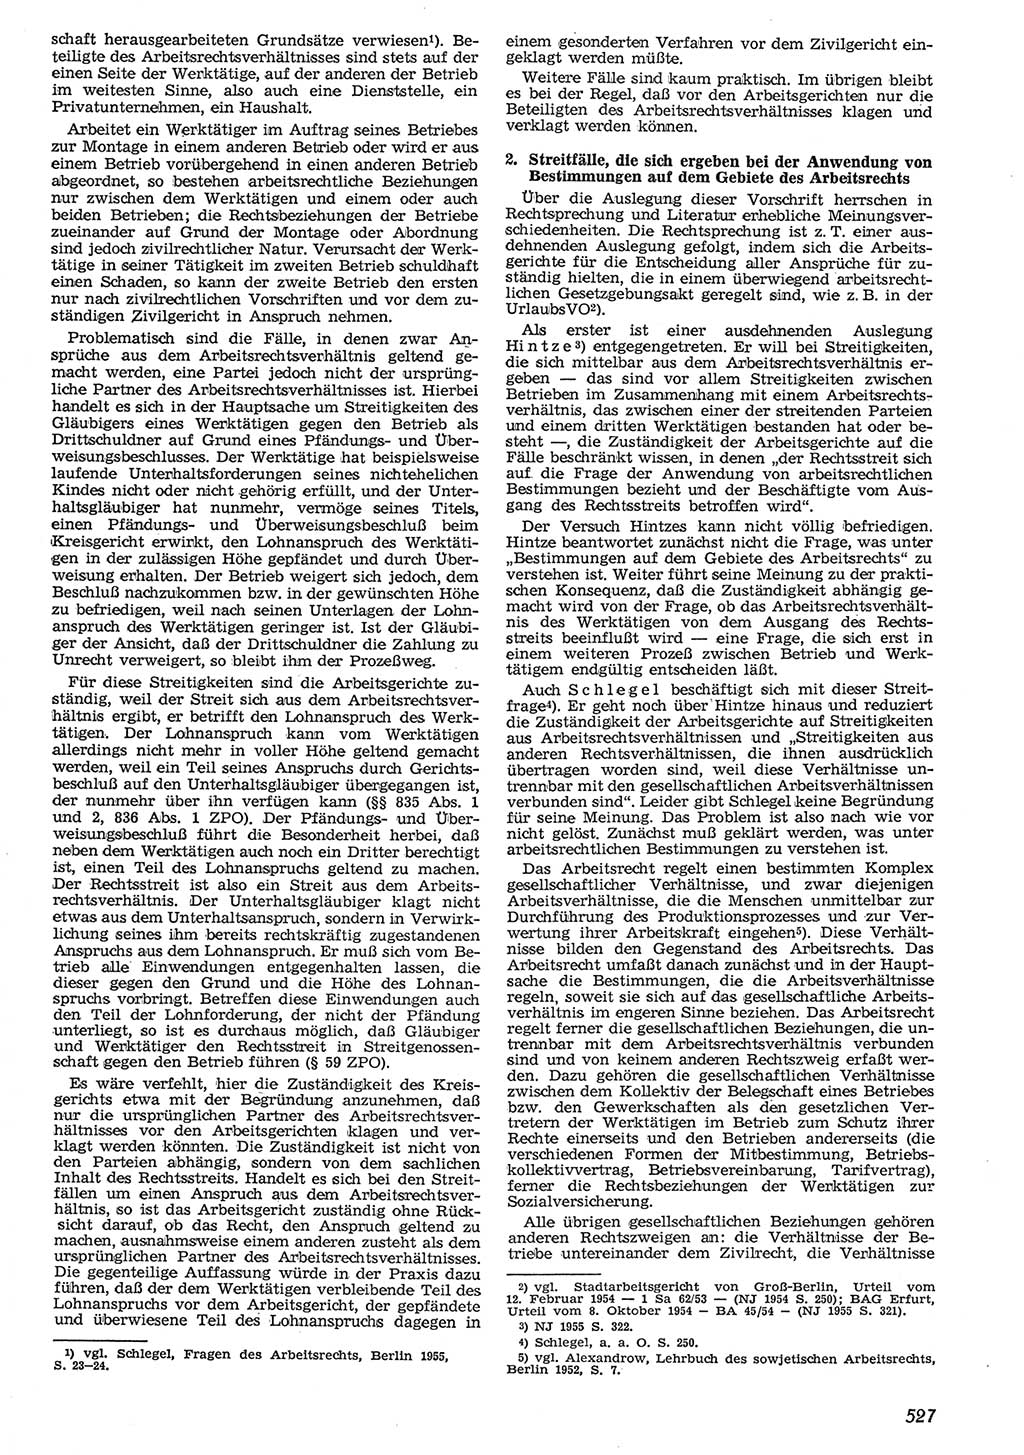 Neue Justiz (NJ), Zeitschrift für Recht und Rechtswissenschaft [Deutsche Demokratische Republik (DDR)], 10. Jahrgang 1956, Seite 527 (NJ DDR 1956, S. 527)